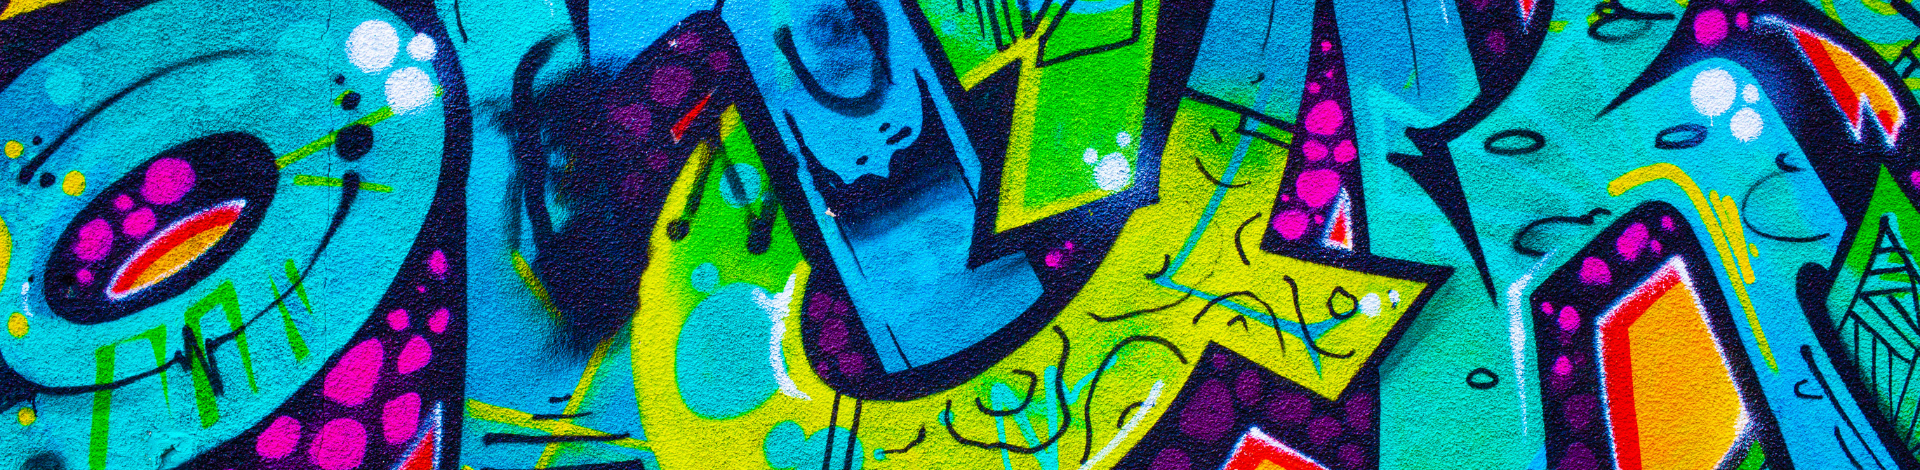 Workshop di Graffiti e della Street Art